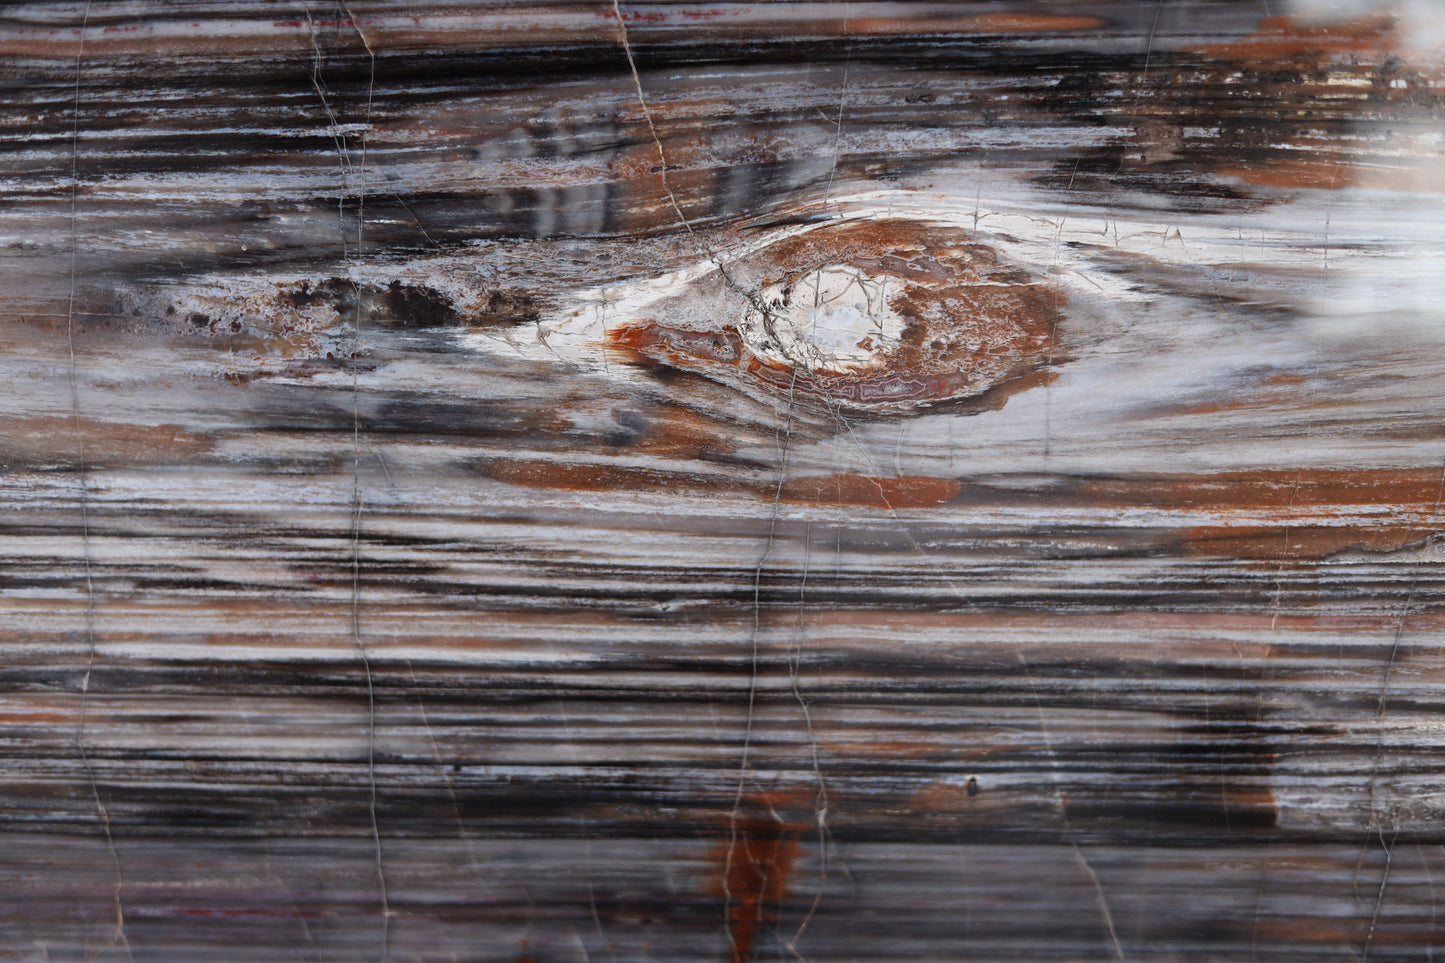 Petrified wood slice lengthwise | Arizona, USA